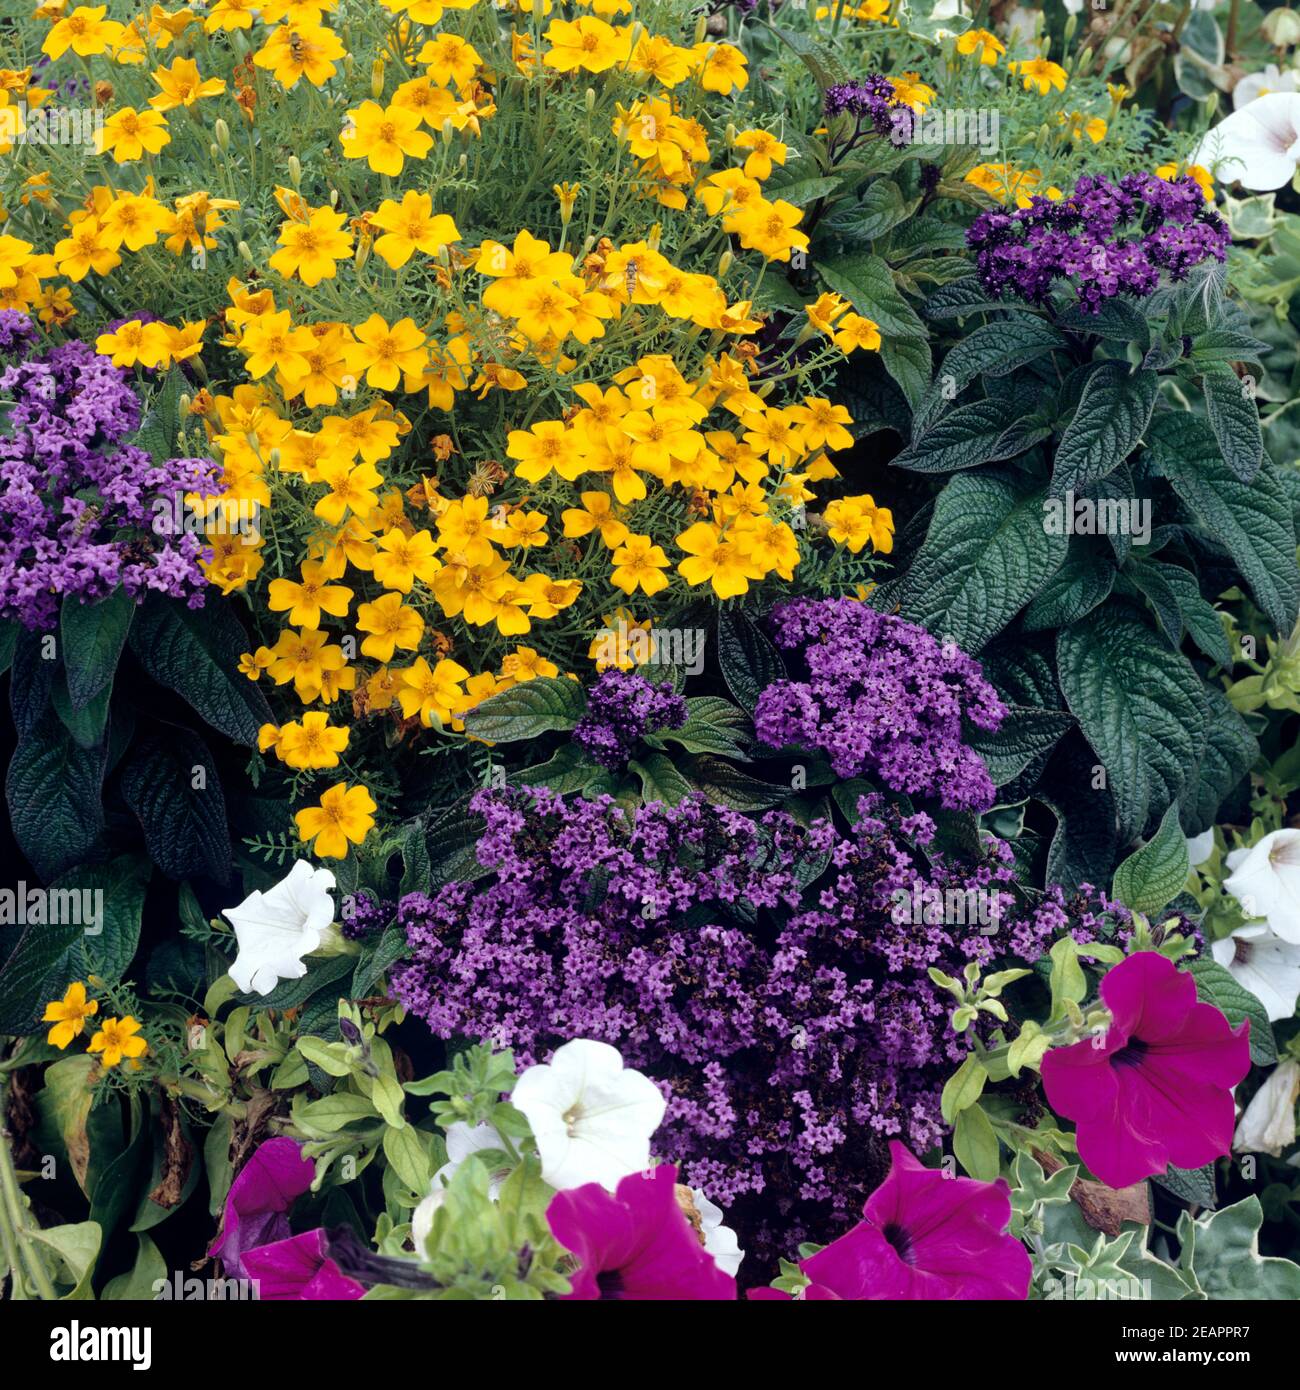 Blumenkuebel, Balkonblumen, Sommerblumen Stock Photo